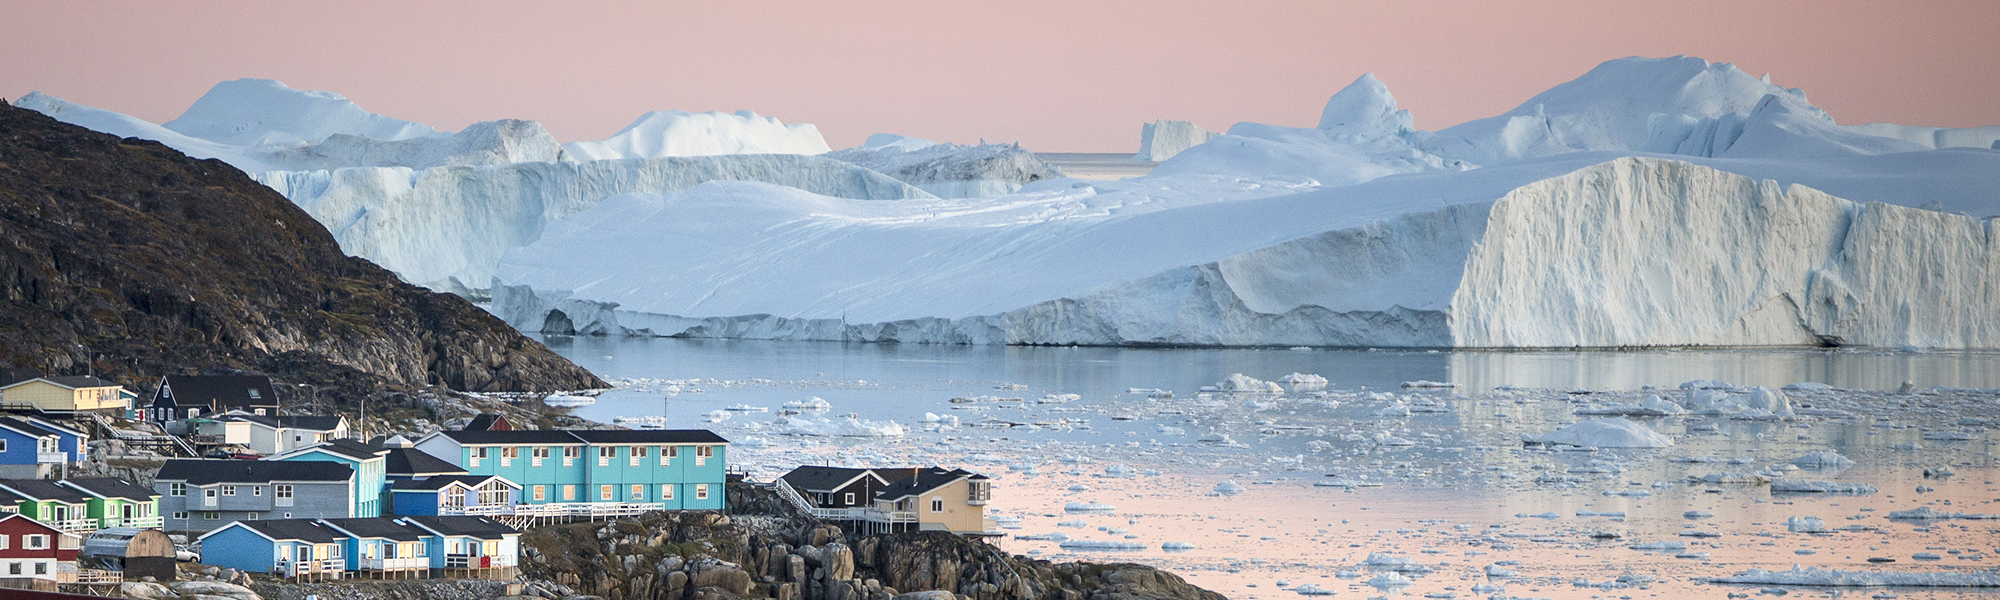 Croisière et voile Baie de Disko © Mads Pihl - Visit-Greenland